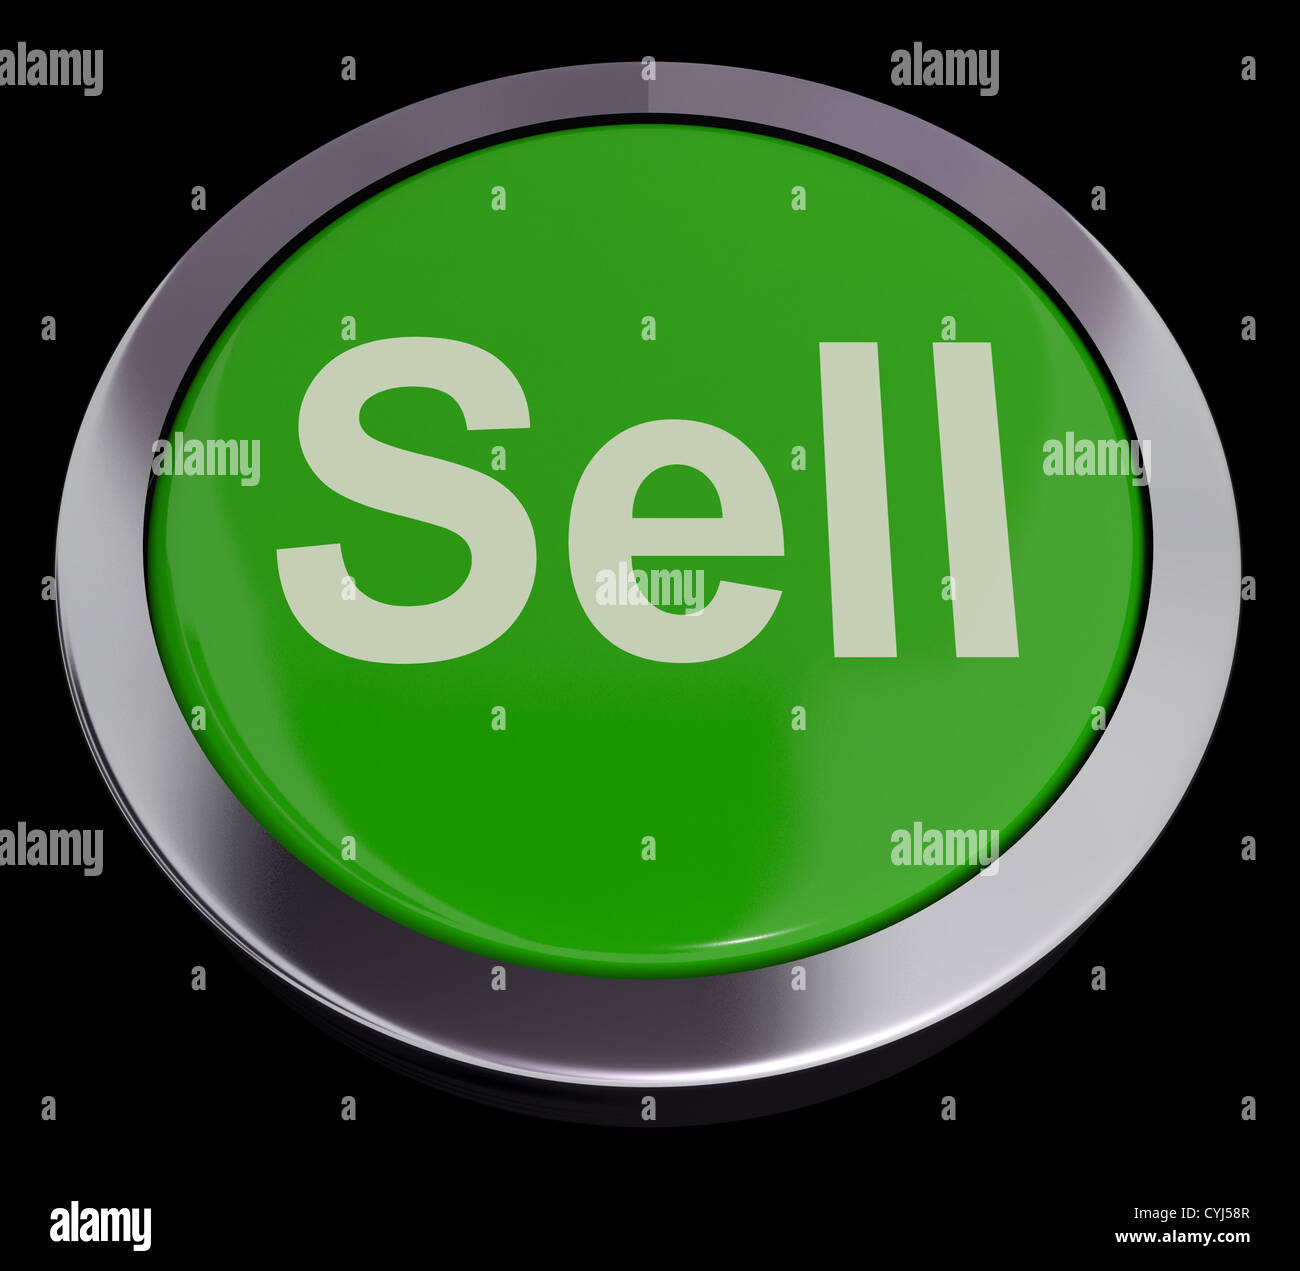 Vender Botón Verde mostrando las ventas y negocios Foto de stock